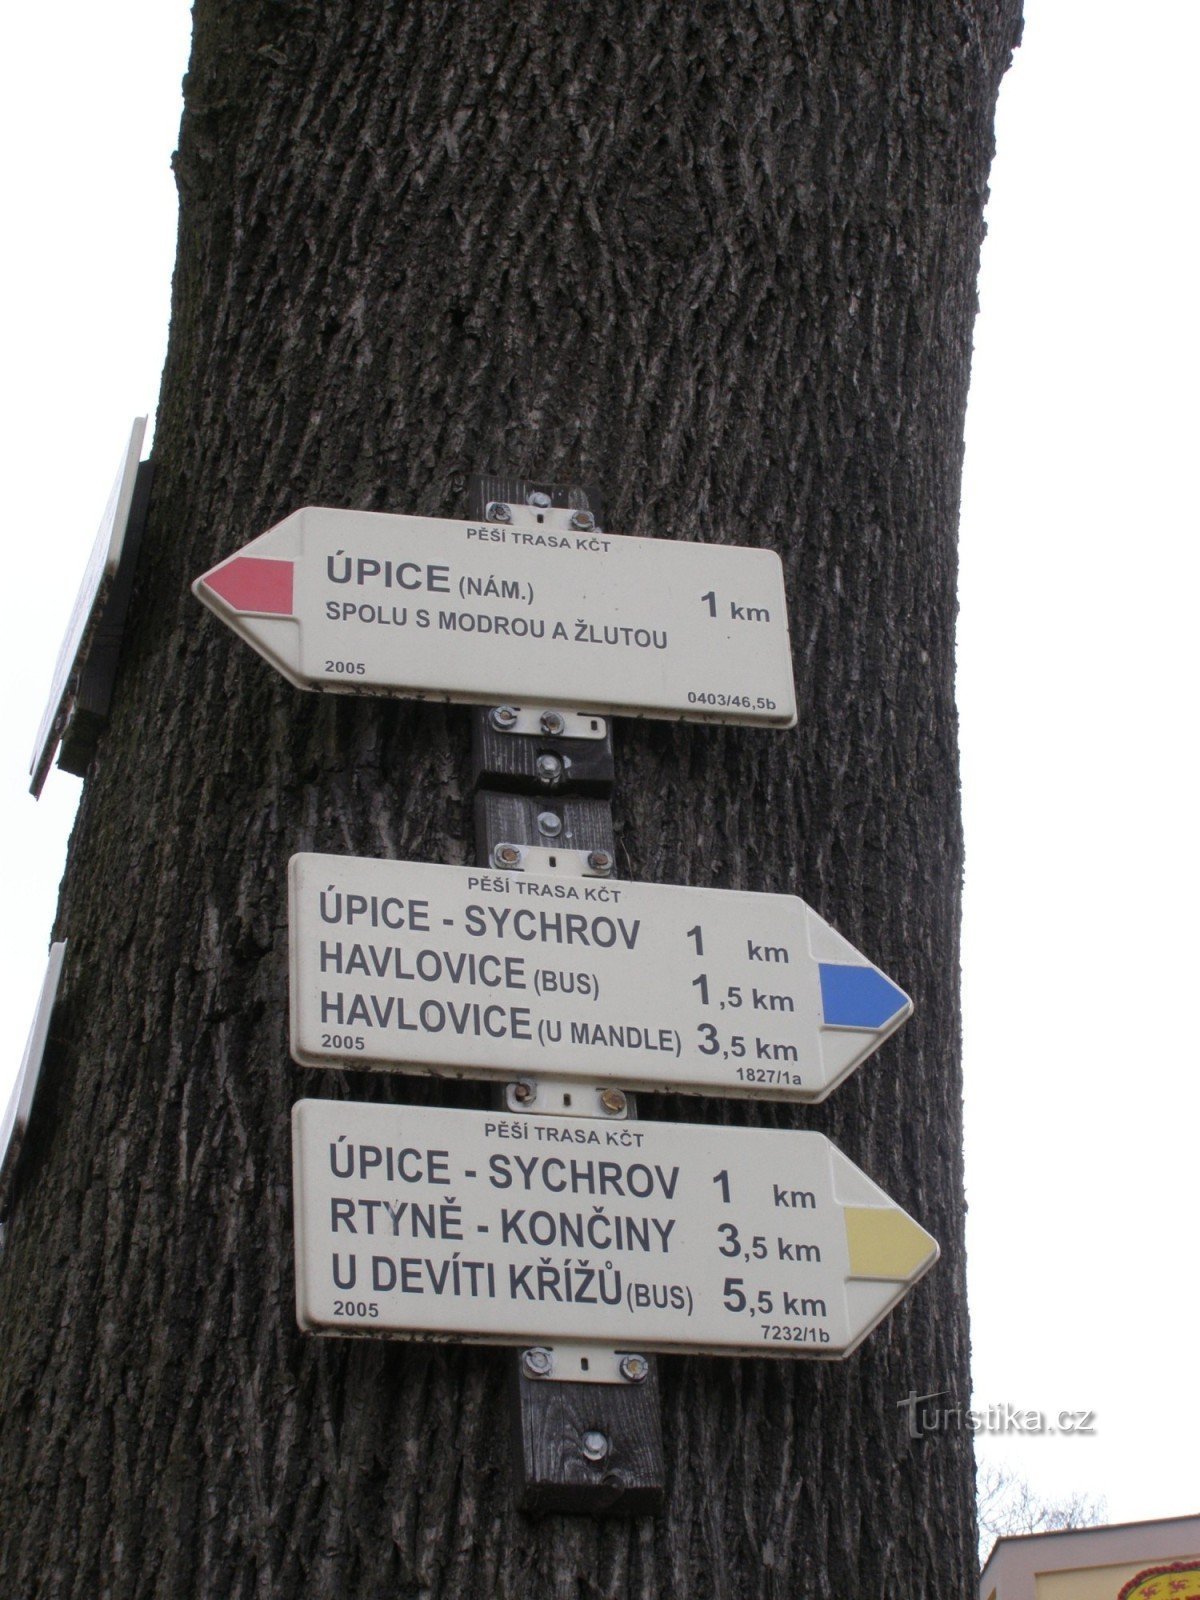 旅游十字路口 - Úpice，在 Úpa 桥旁